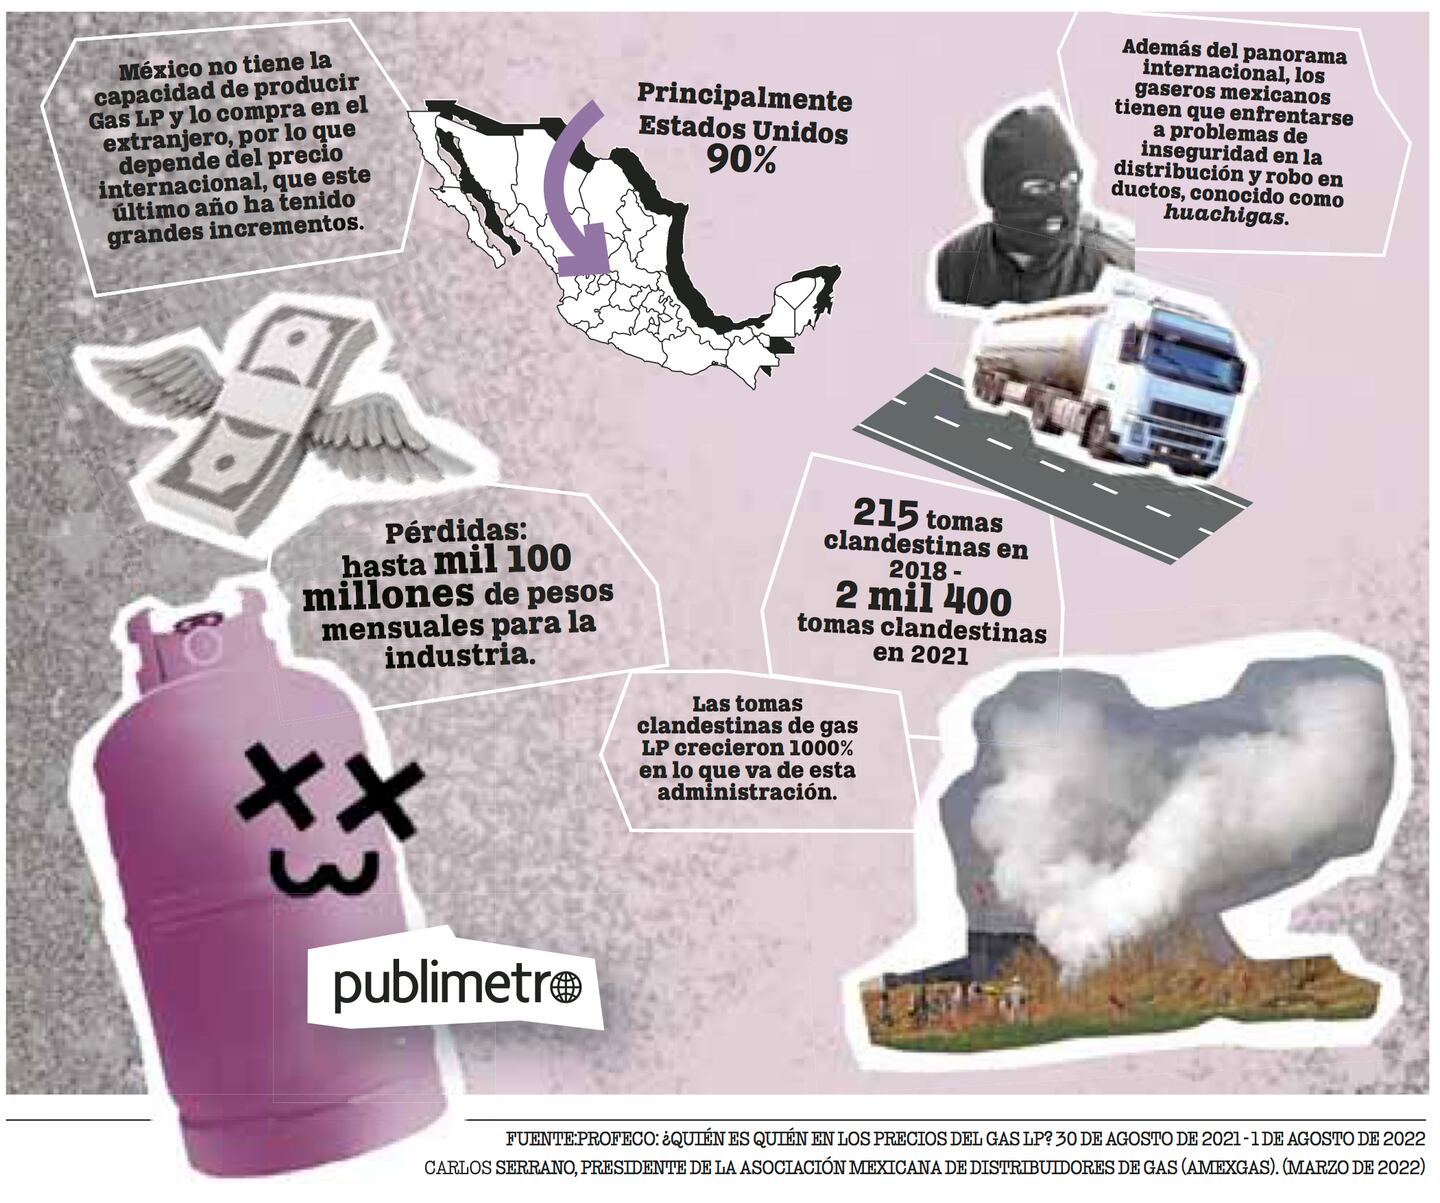 Gas Bienestar: Los retos que enfrentó la industria en el último año. Huachigas y el panorama internacional sofocaron a la industria.